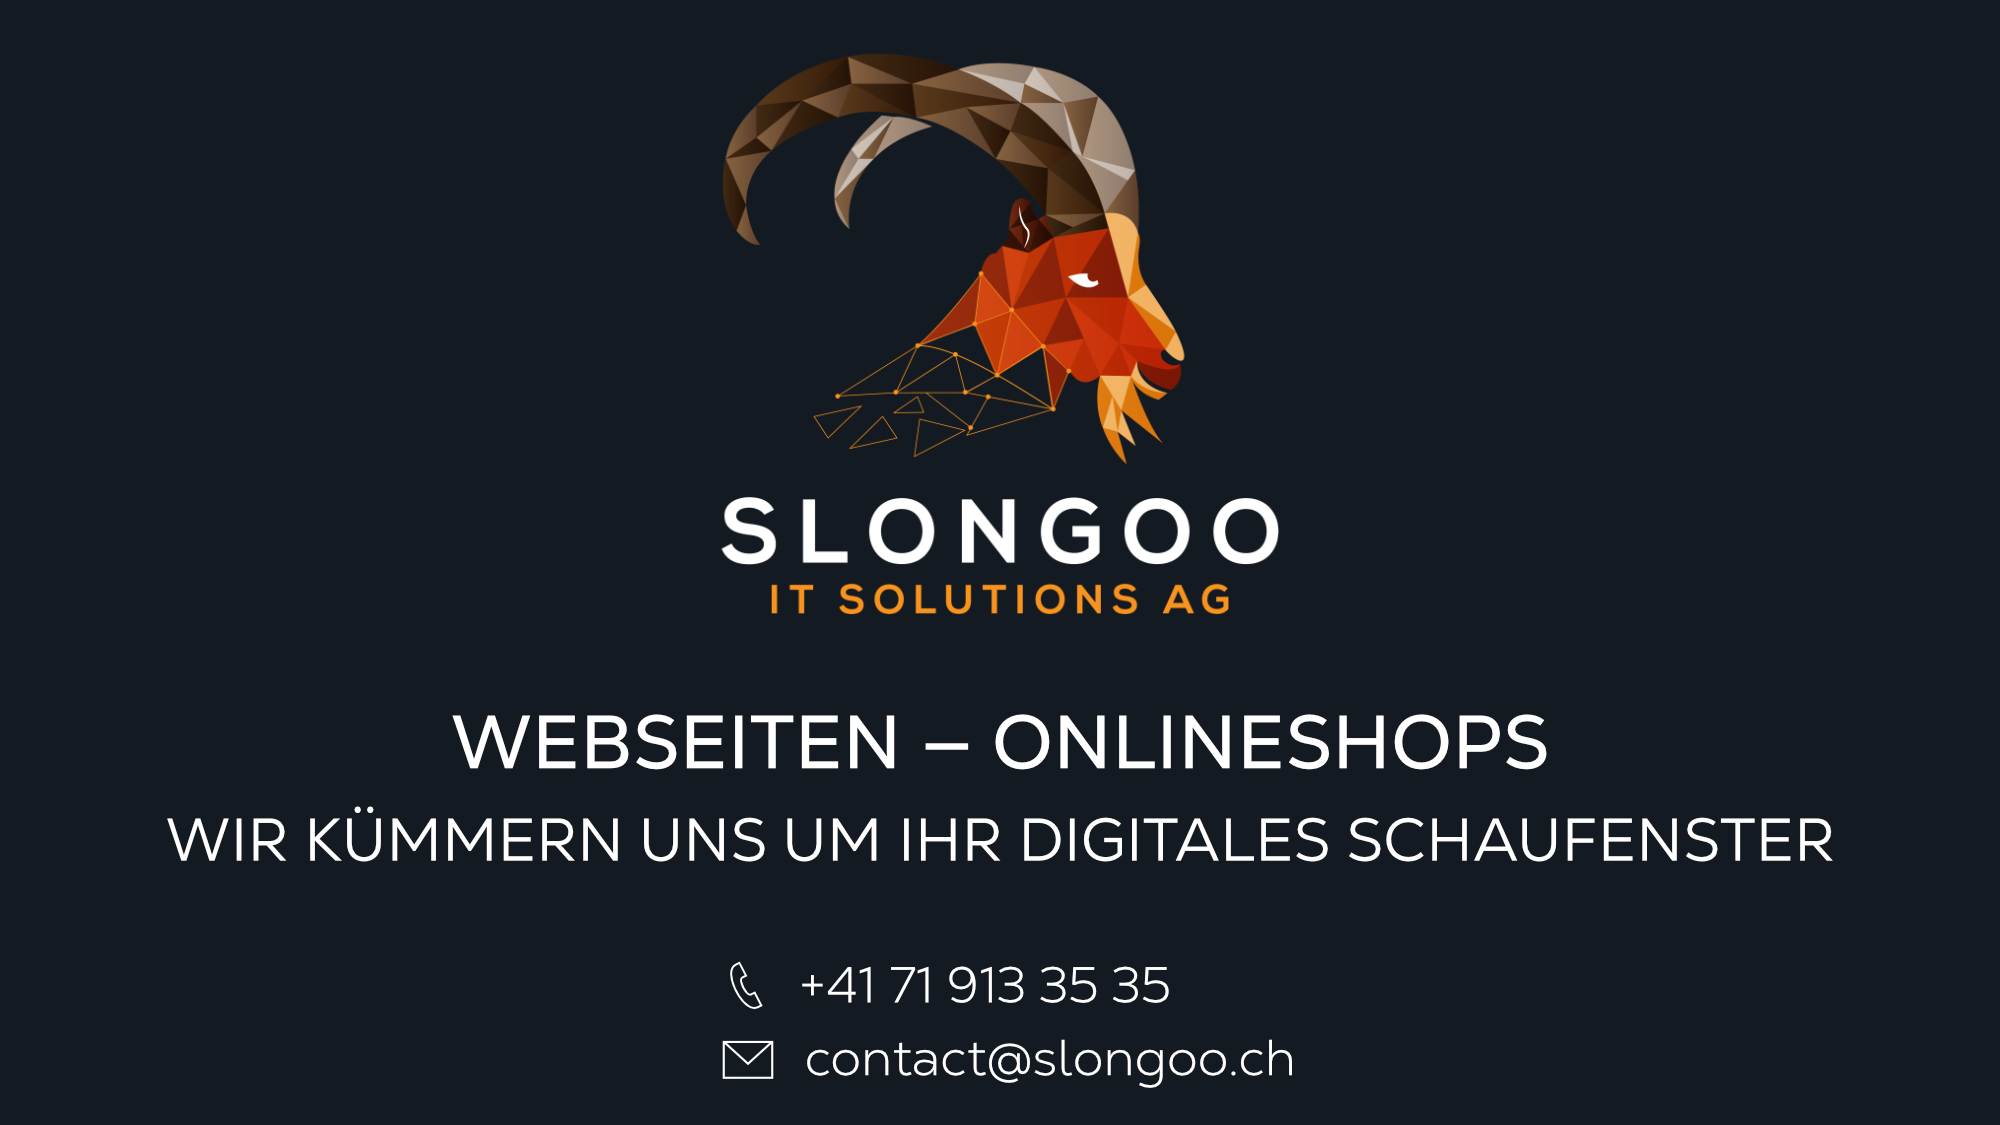 Slongoo IT Solutions AG - Webseiten & Onlineshops - Wir kümmern uns um ihr digitales Schaufenster